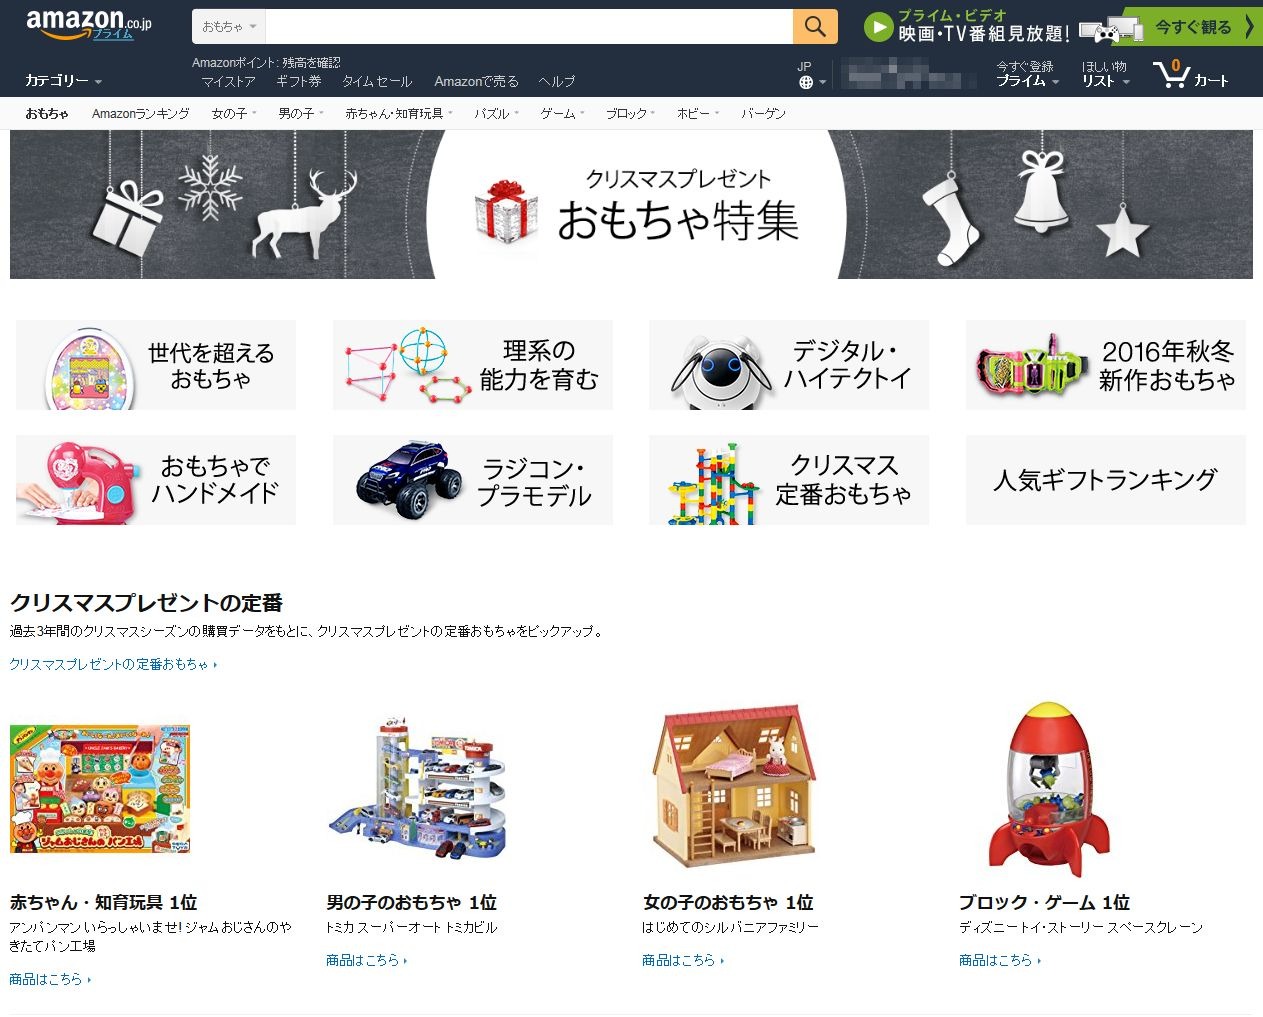 Amazonクリスマスおもちゃ特集公開 Stem分野や定番を紹介 リセマム